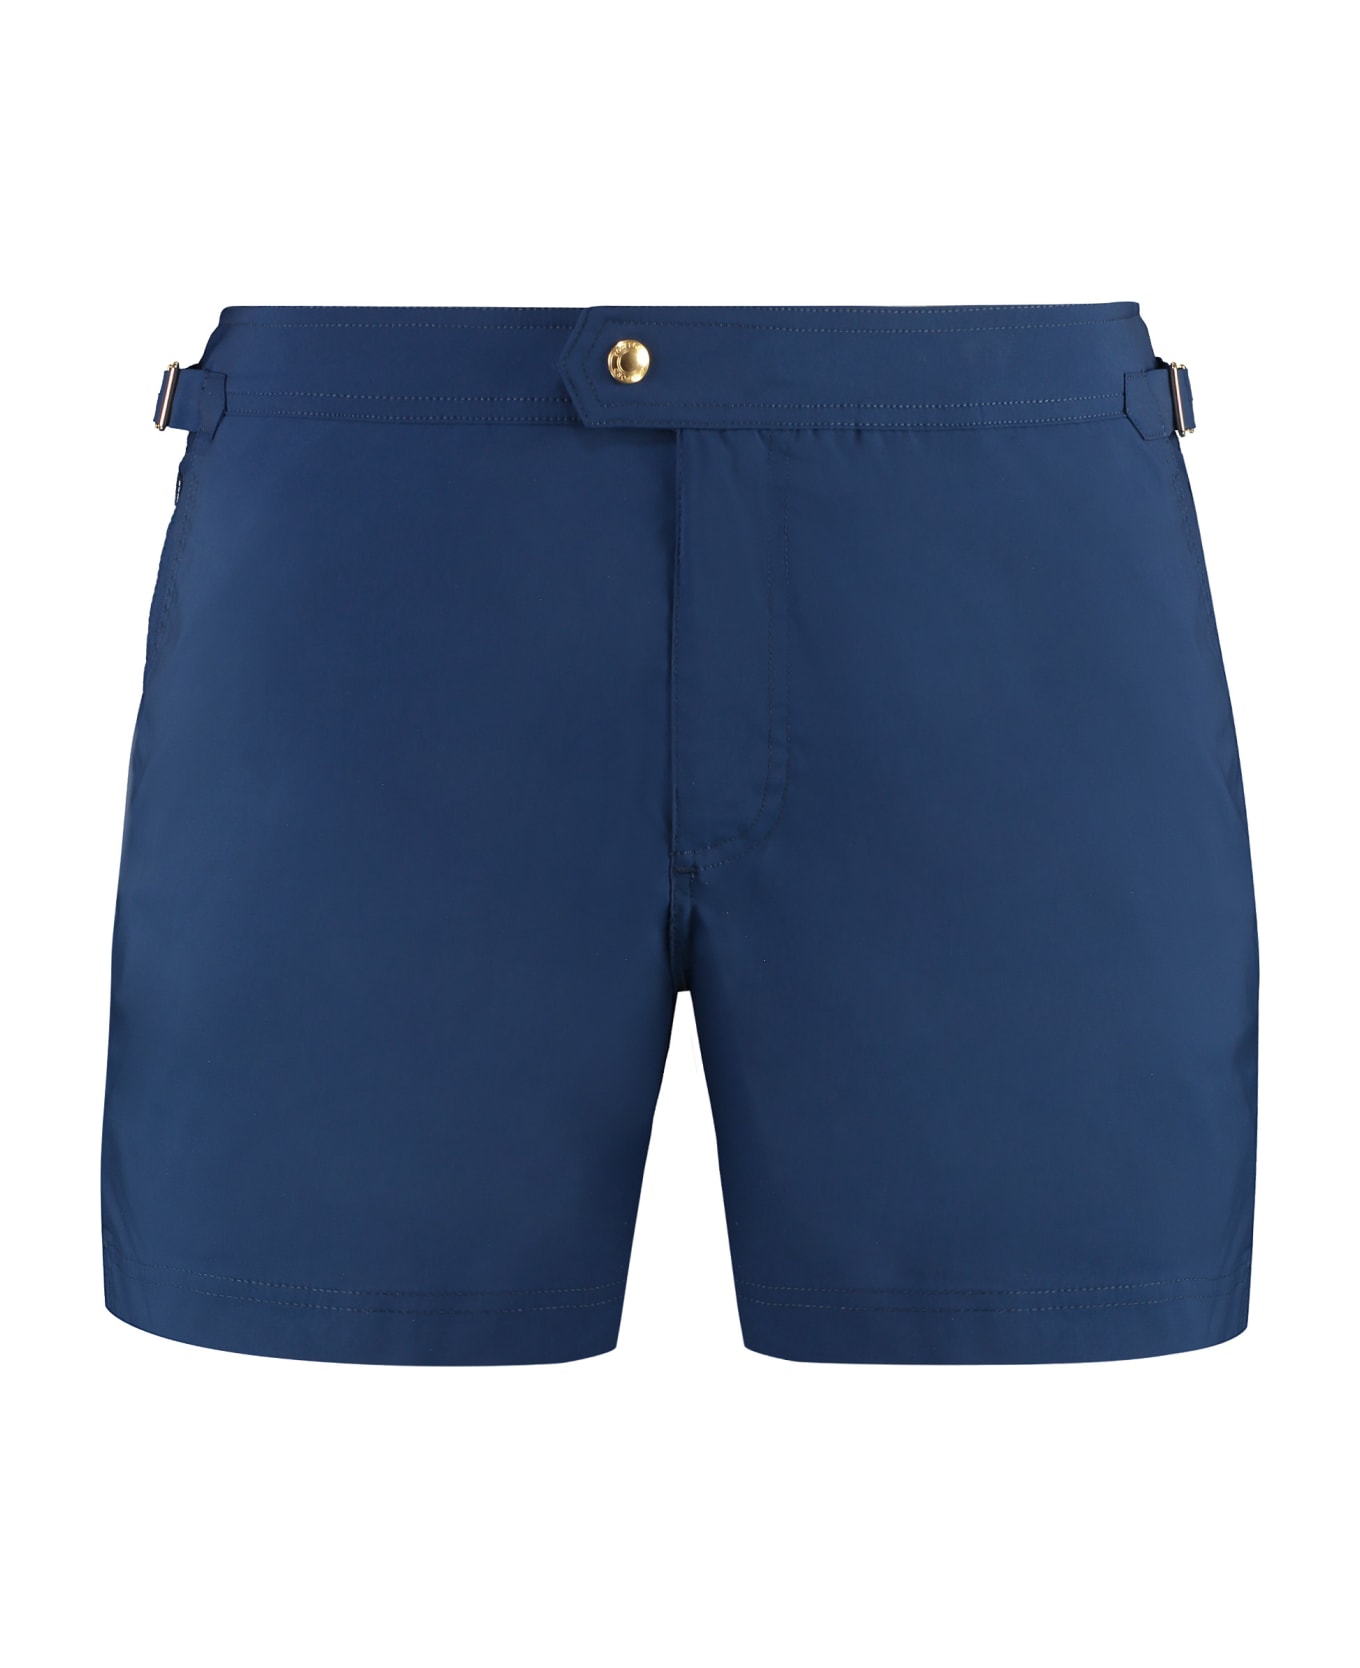 Tom Ford Nylon Swim Shorts - blue